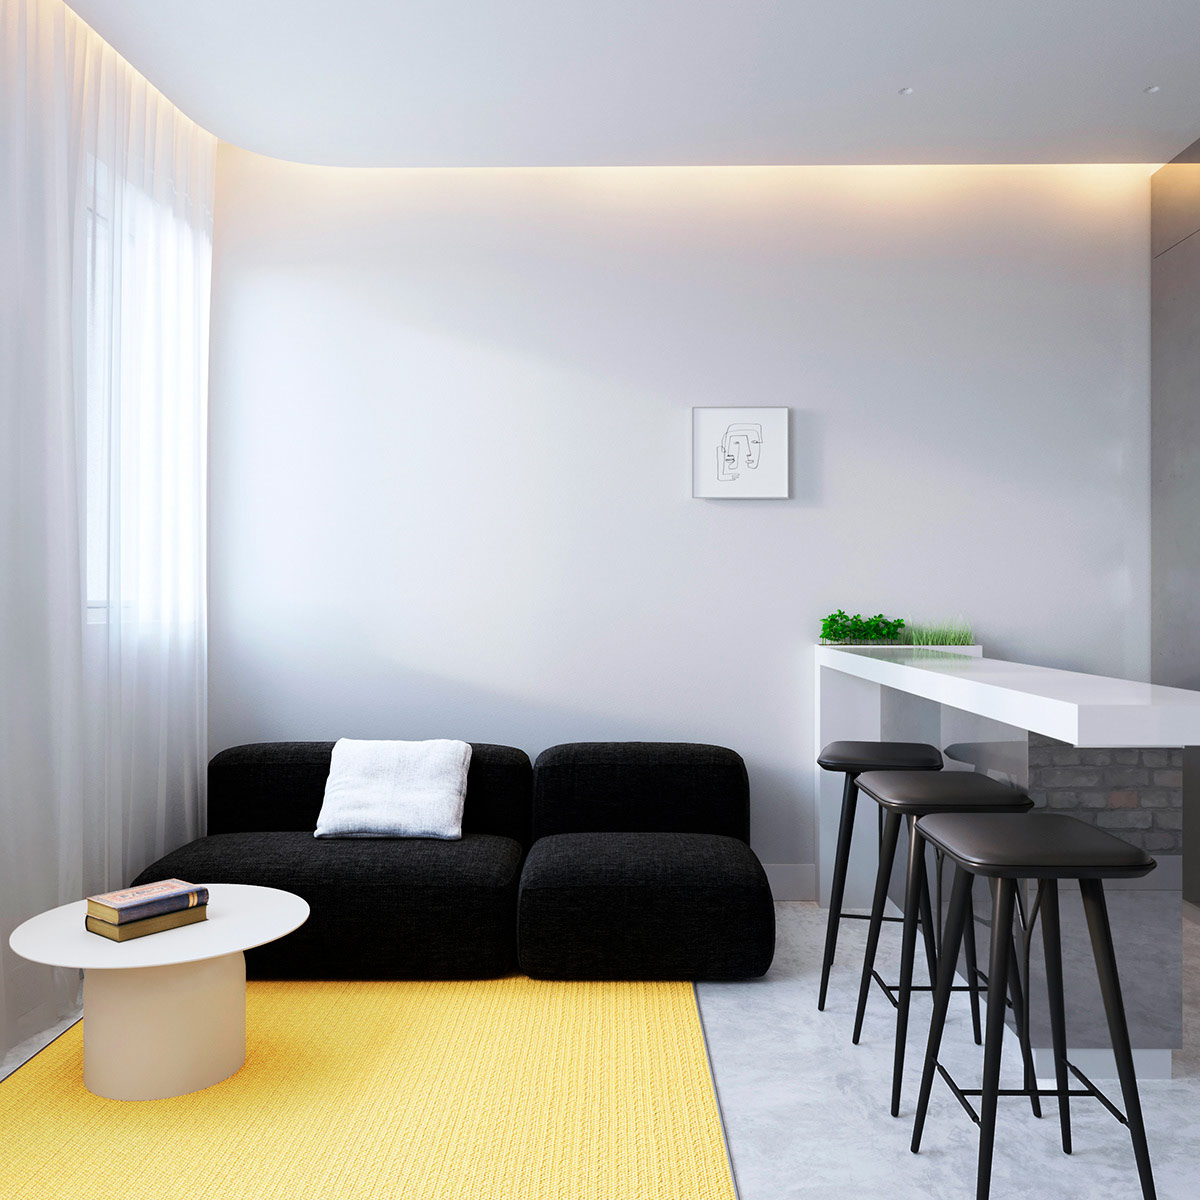 Phòng khách căn hộ nhỏ nổi bật với ghế sofa màu đen tuyền và thảm trải sàn sắc vàng tươi rực rỡ khiến không gian nhà sáng bừng sức sống.